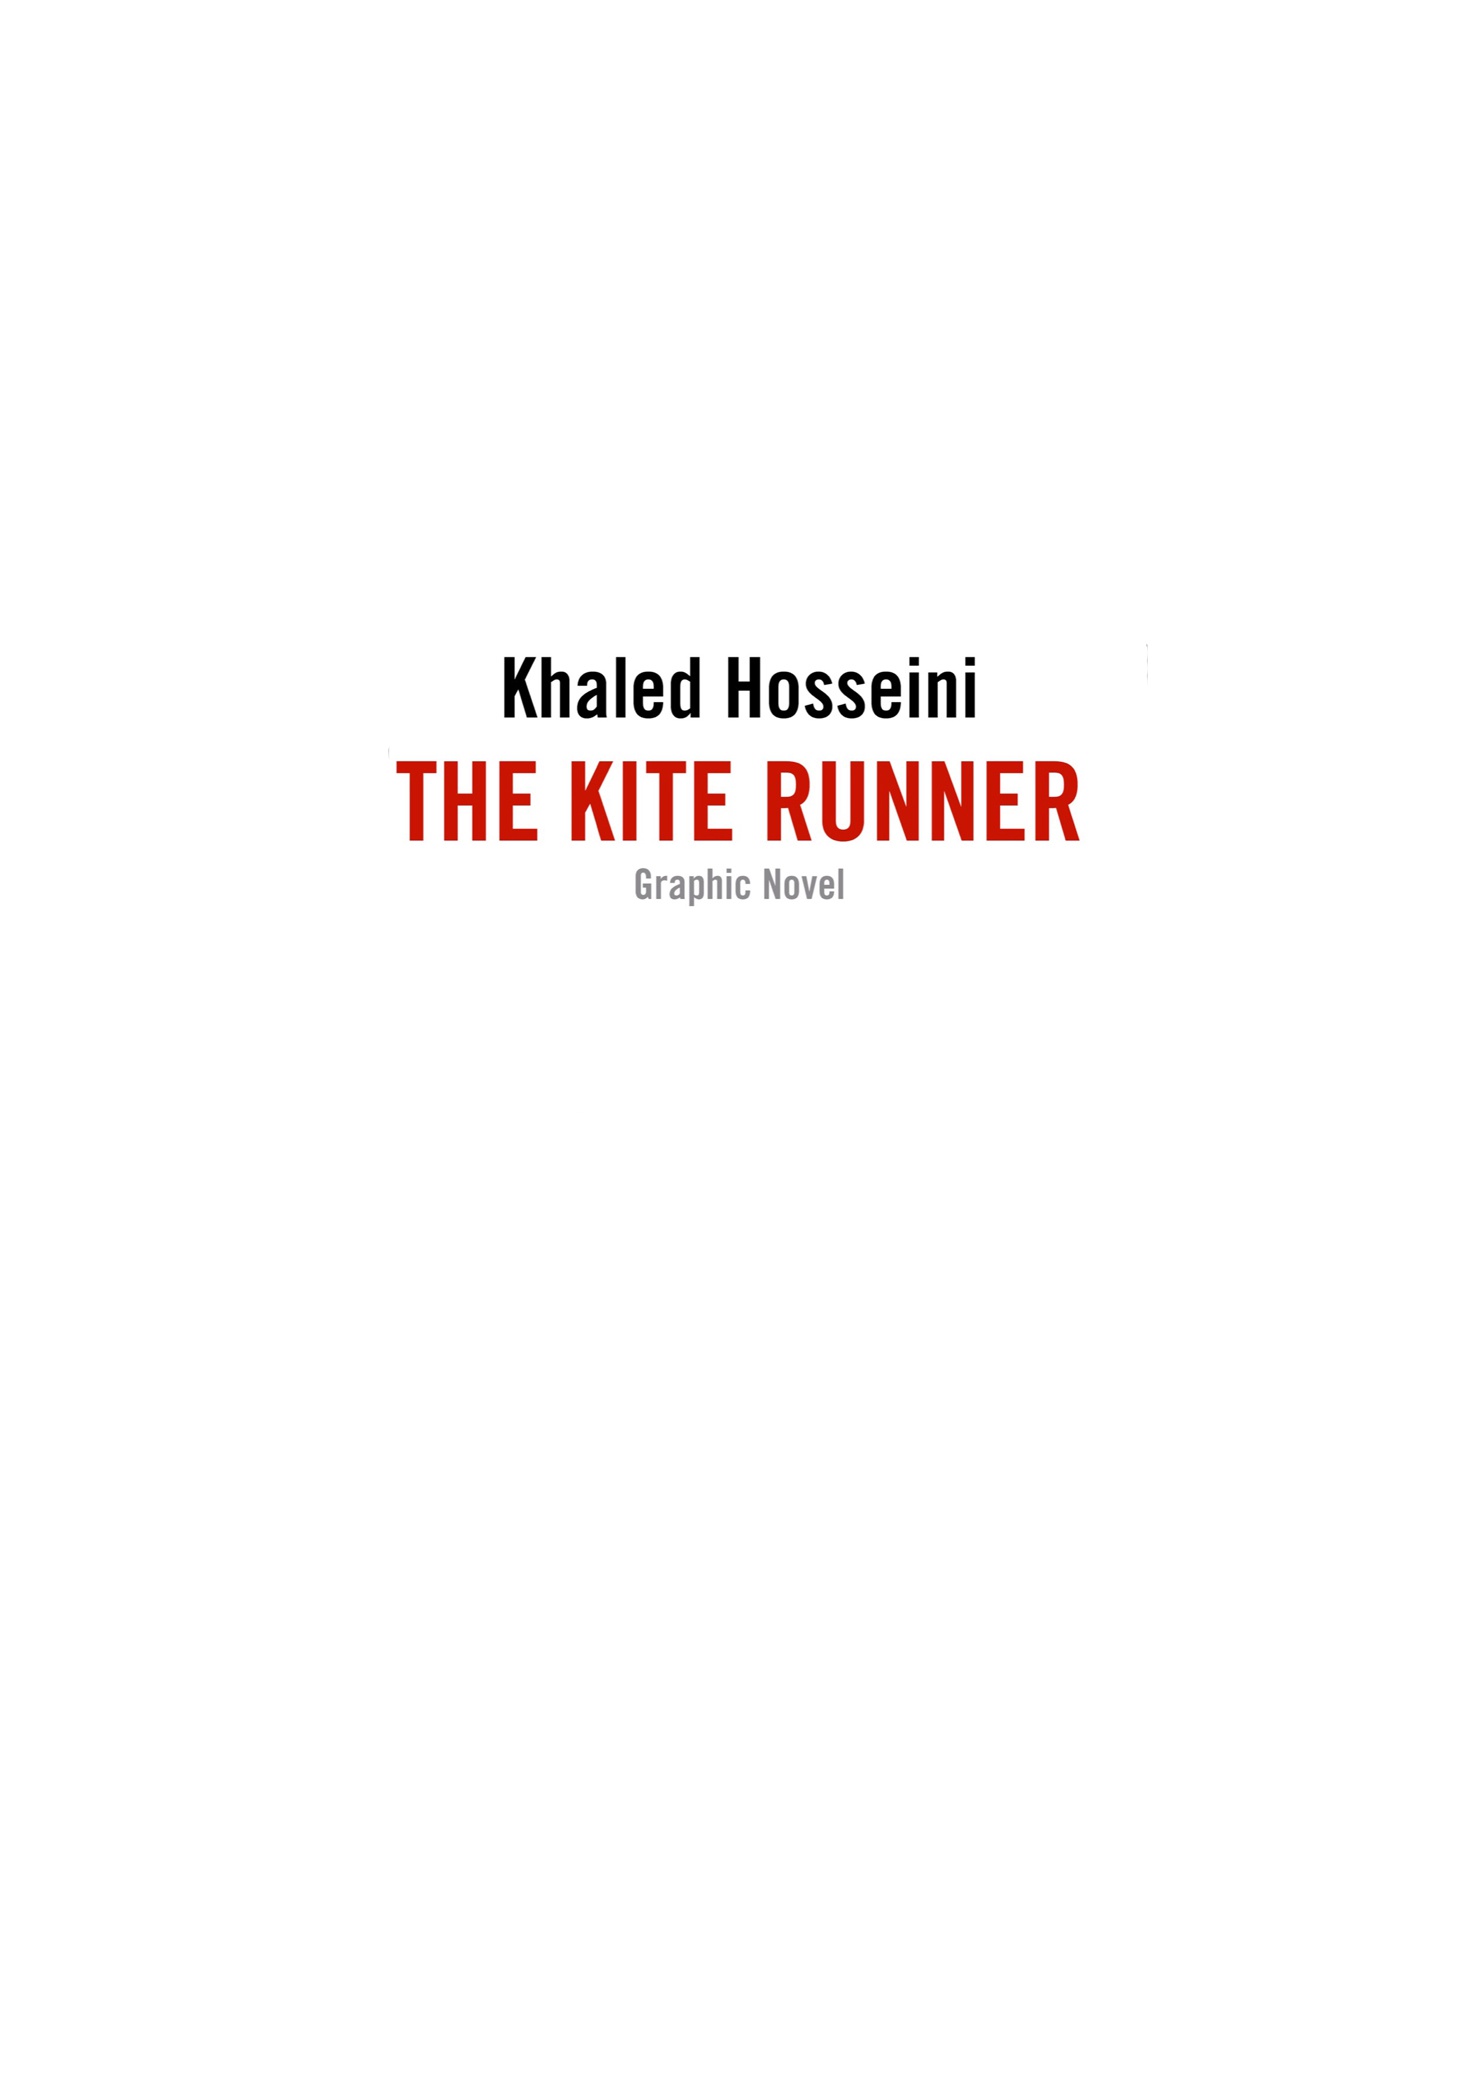 Read online The Kite Runner comic -  Issue # TPB - 3